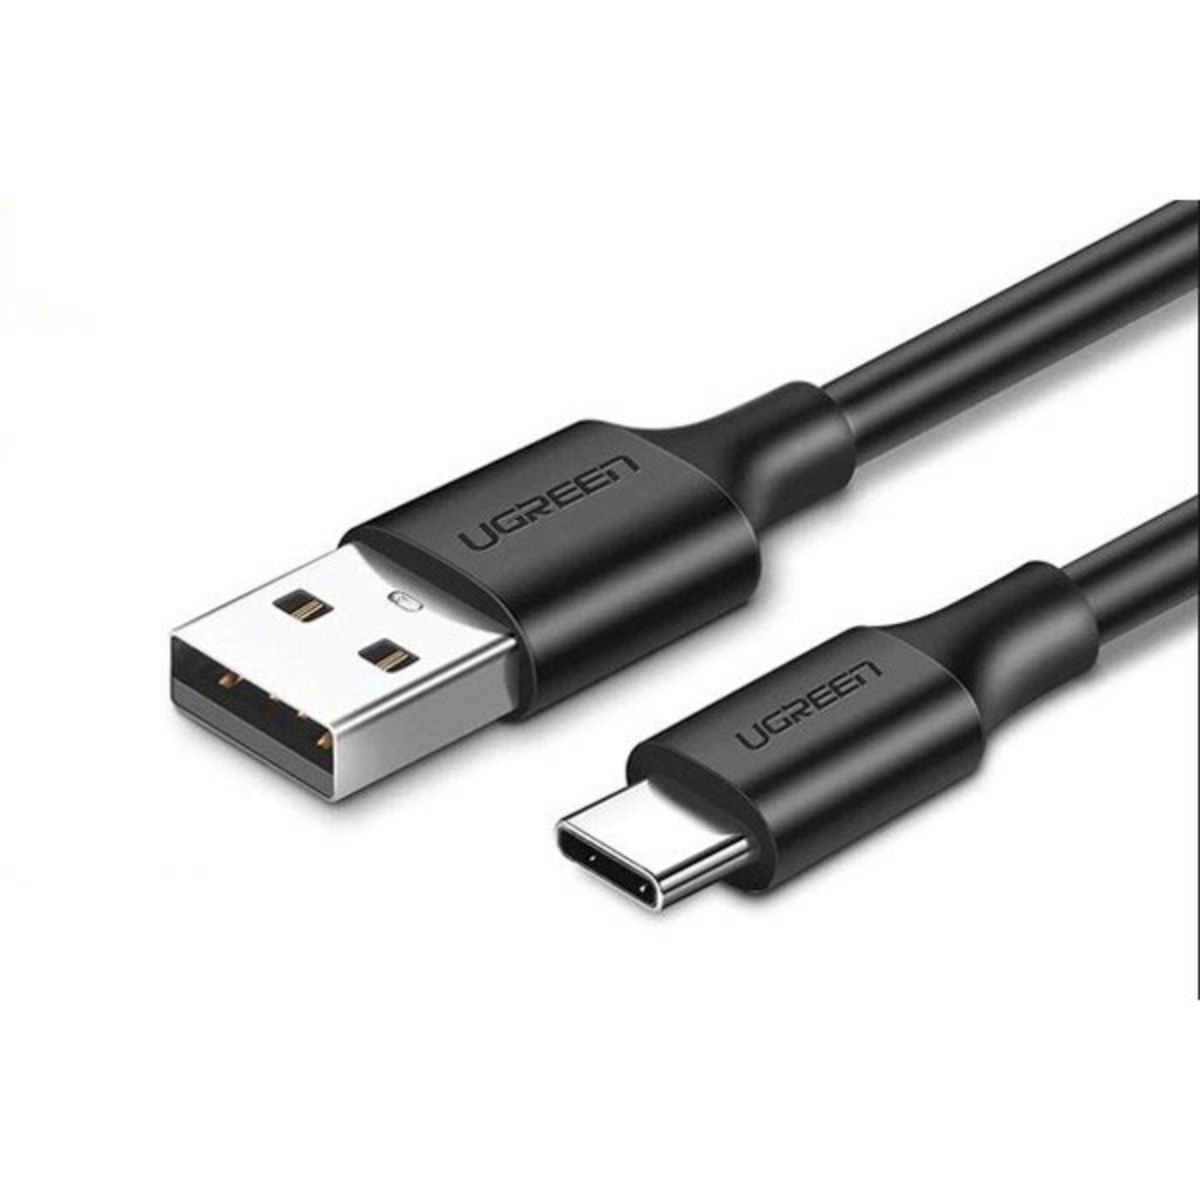 Cáp USB Type-C Ugreen US287, 60114 màu đen, chiều dài 25cm, sạc tối đa 3A, truyền dữ liệu 480Mbps